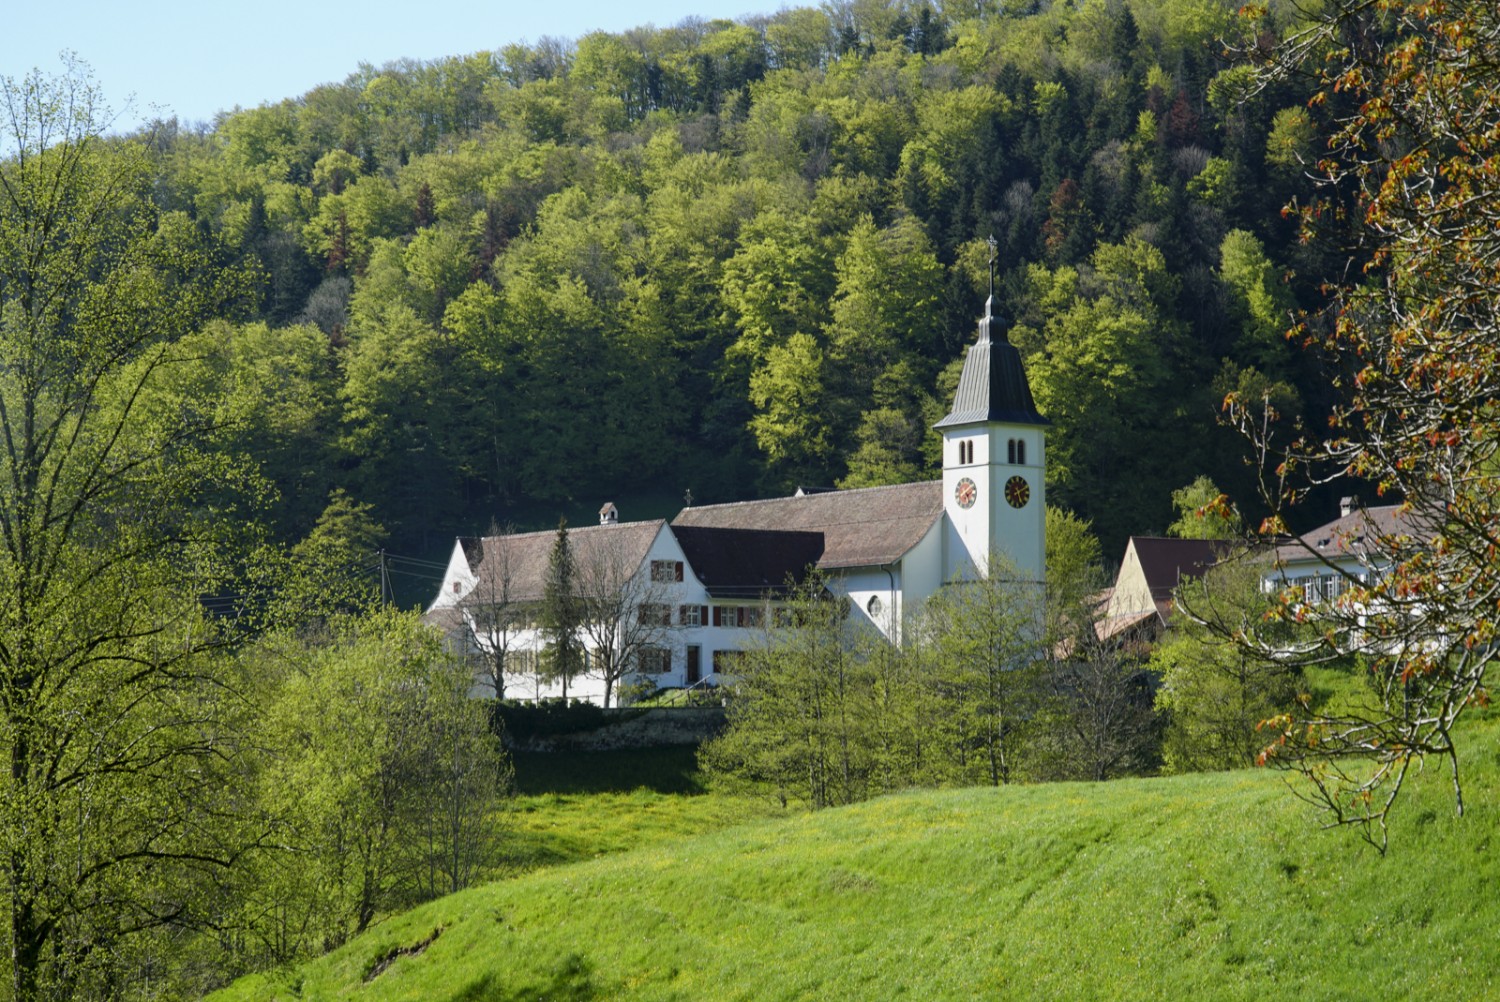 Le monastère orthodoxe de Beinwil propose aussi un hébergement. Photo : Mia Hofmann